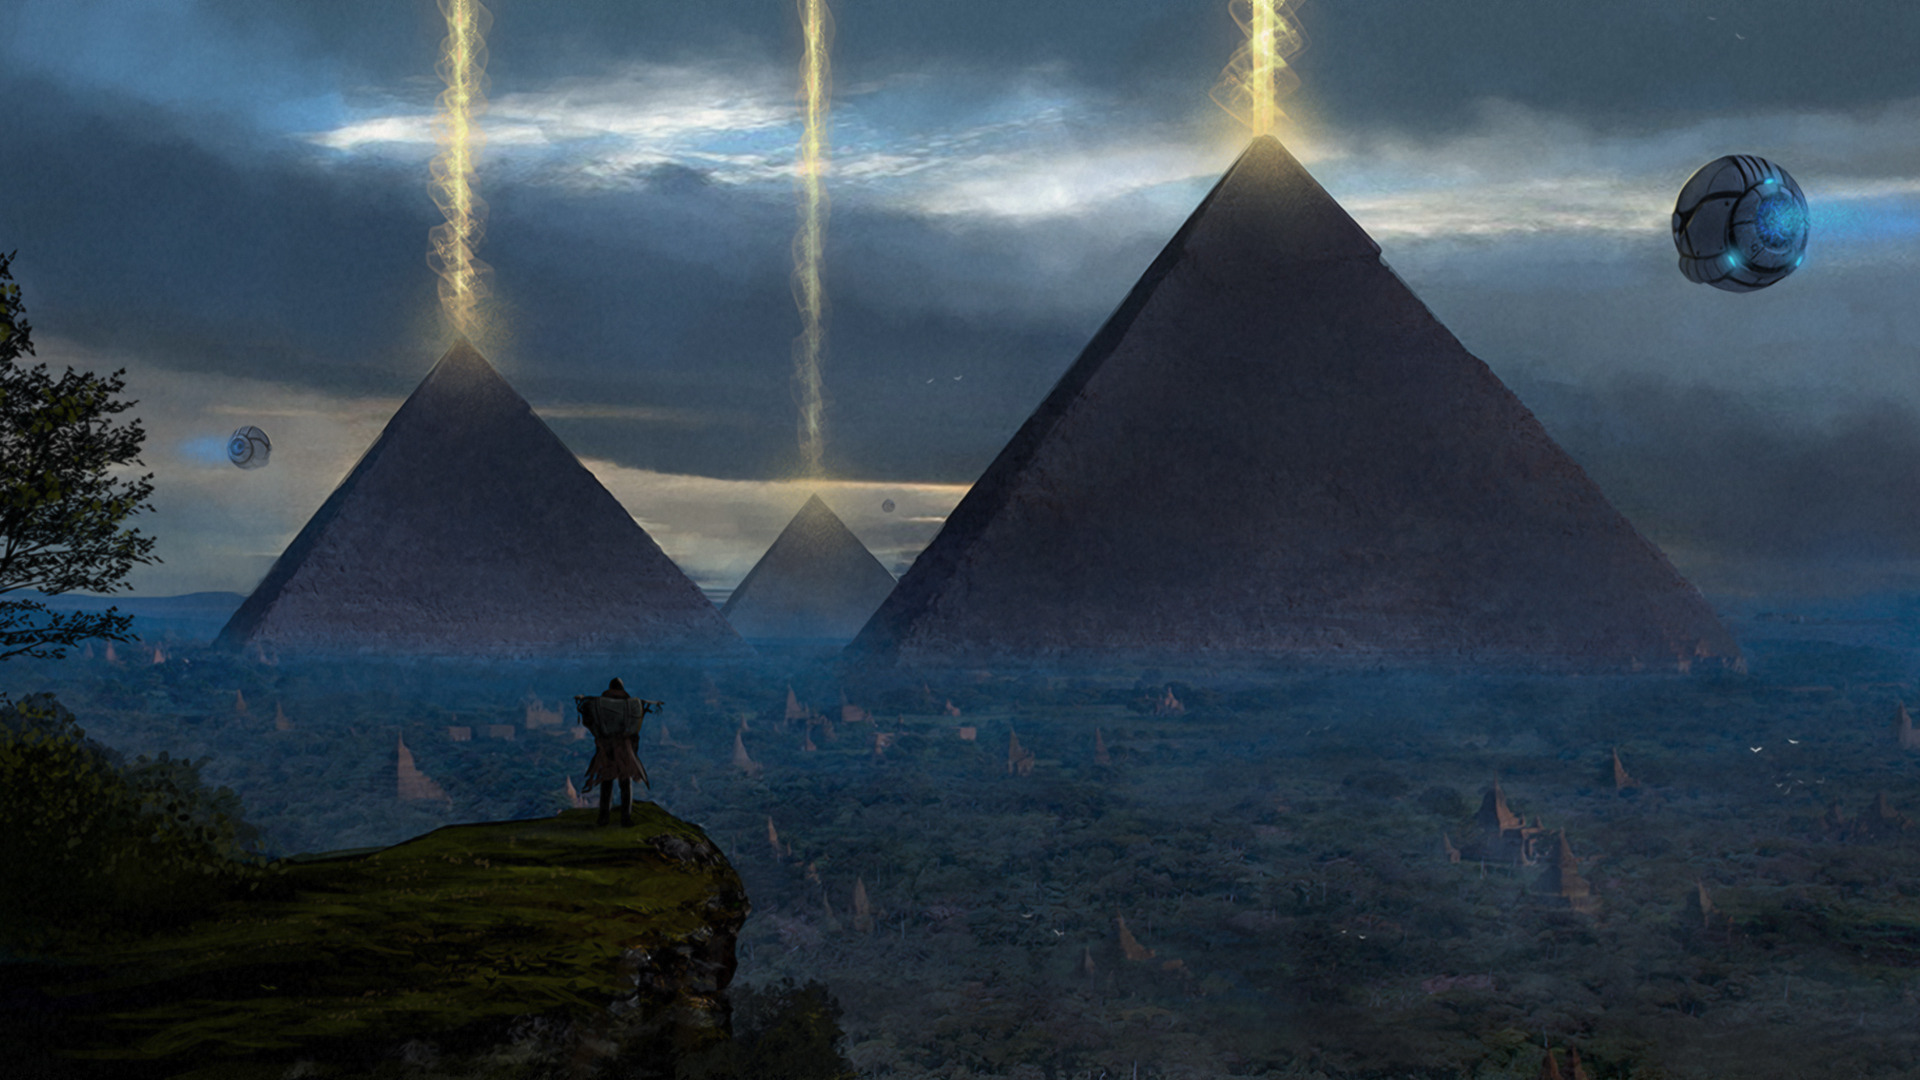 Абу мистический. Египет концепт арт пирамида. Пирамида Хеопса пришельцы. Пирамиды Хеопса инопланетяне. Древние цивилизации пирамиды Египта.